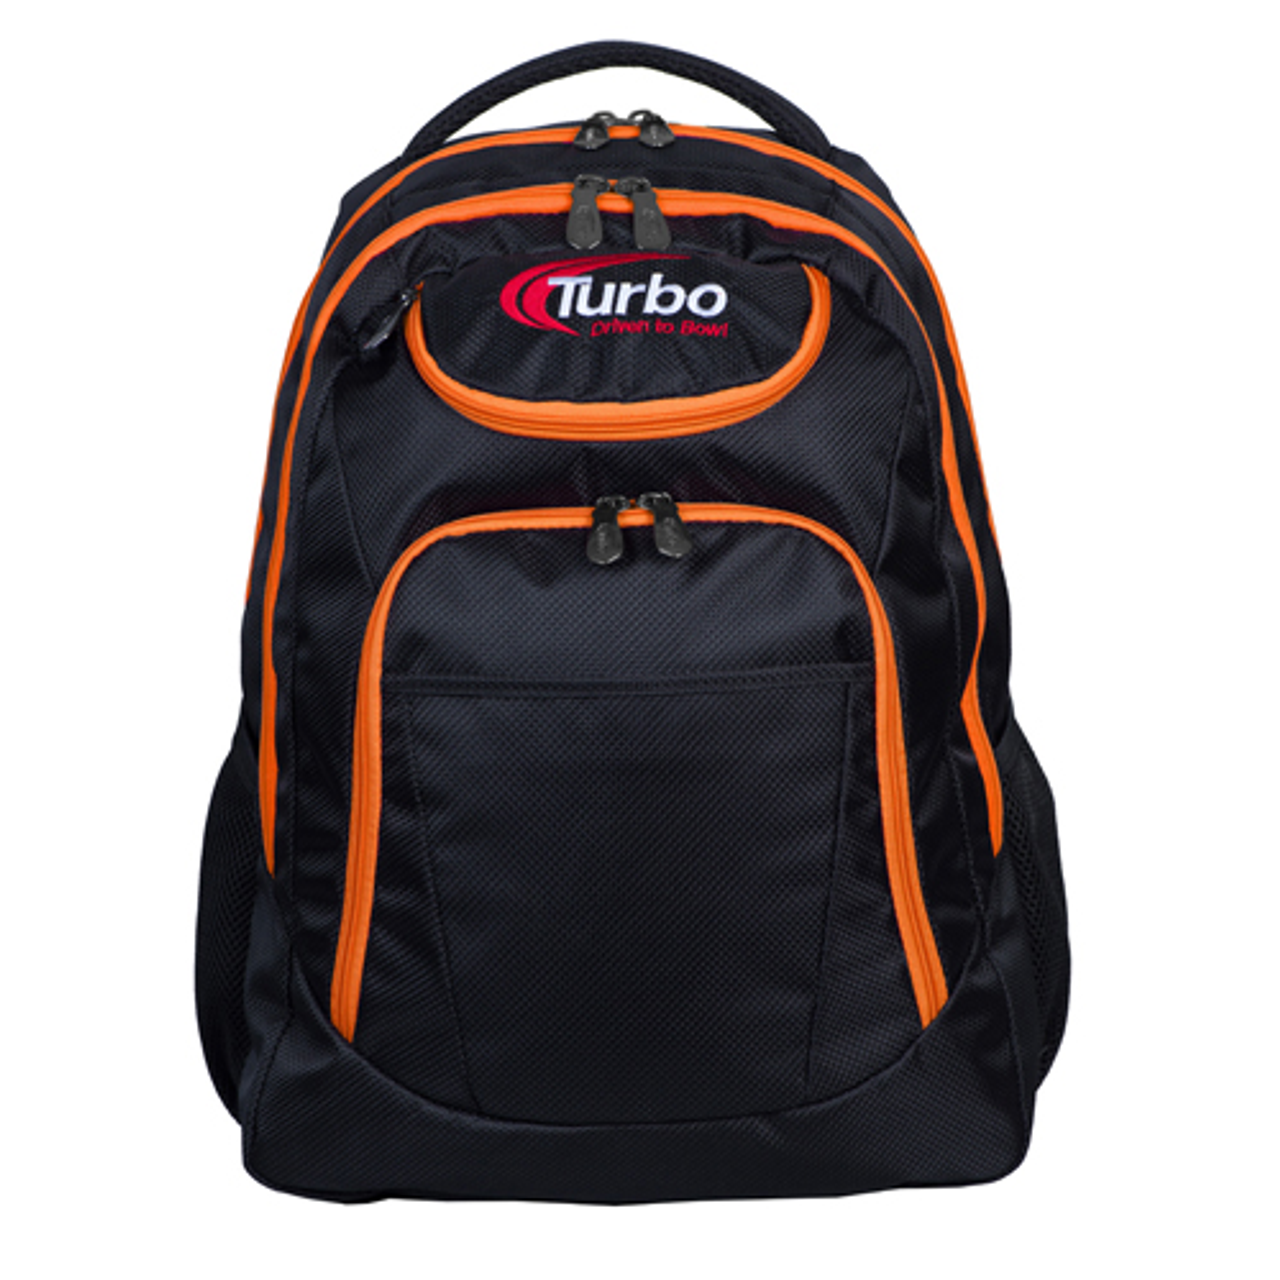 Turbo Shuttle Backpack Black/Orange